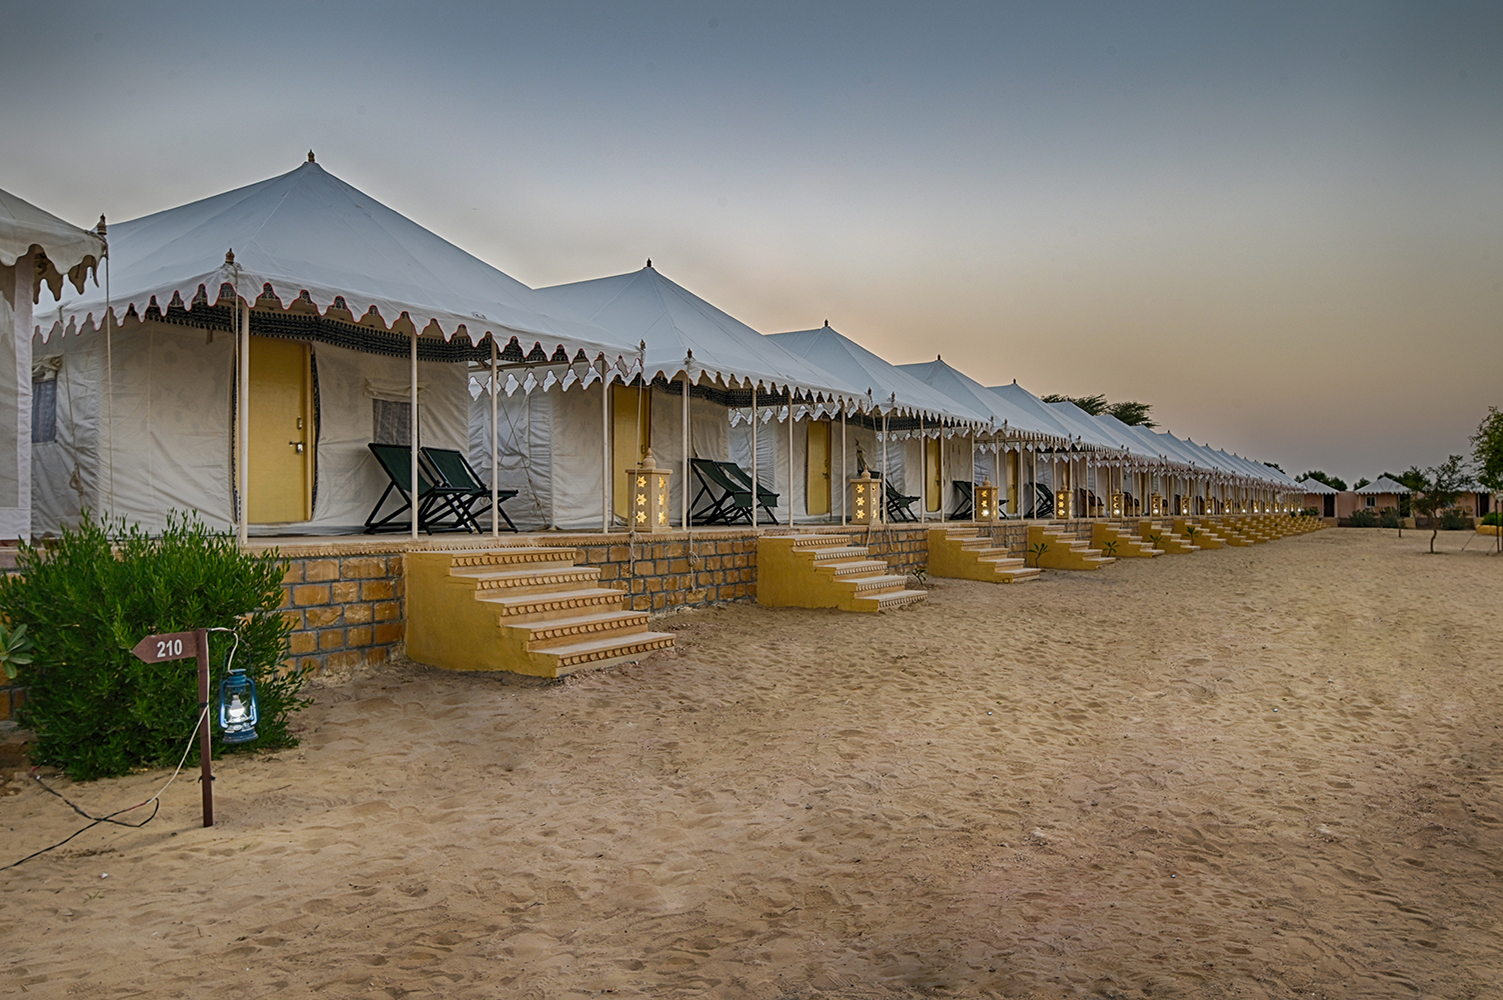 luxury Camp in Jaisalmer